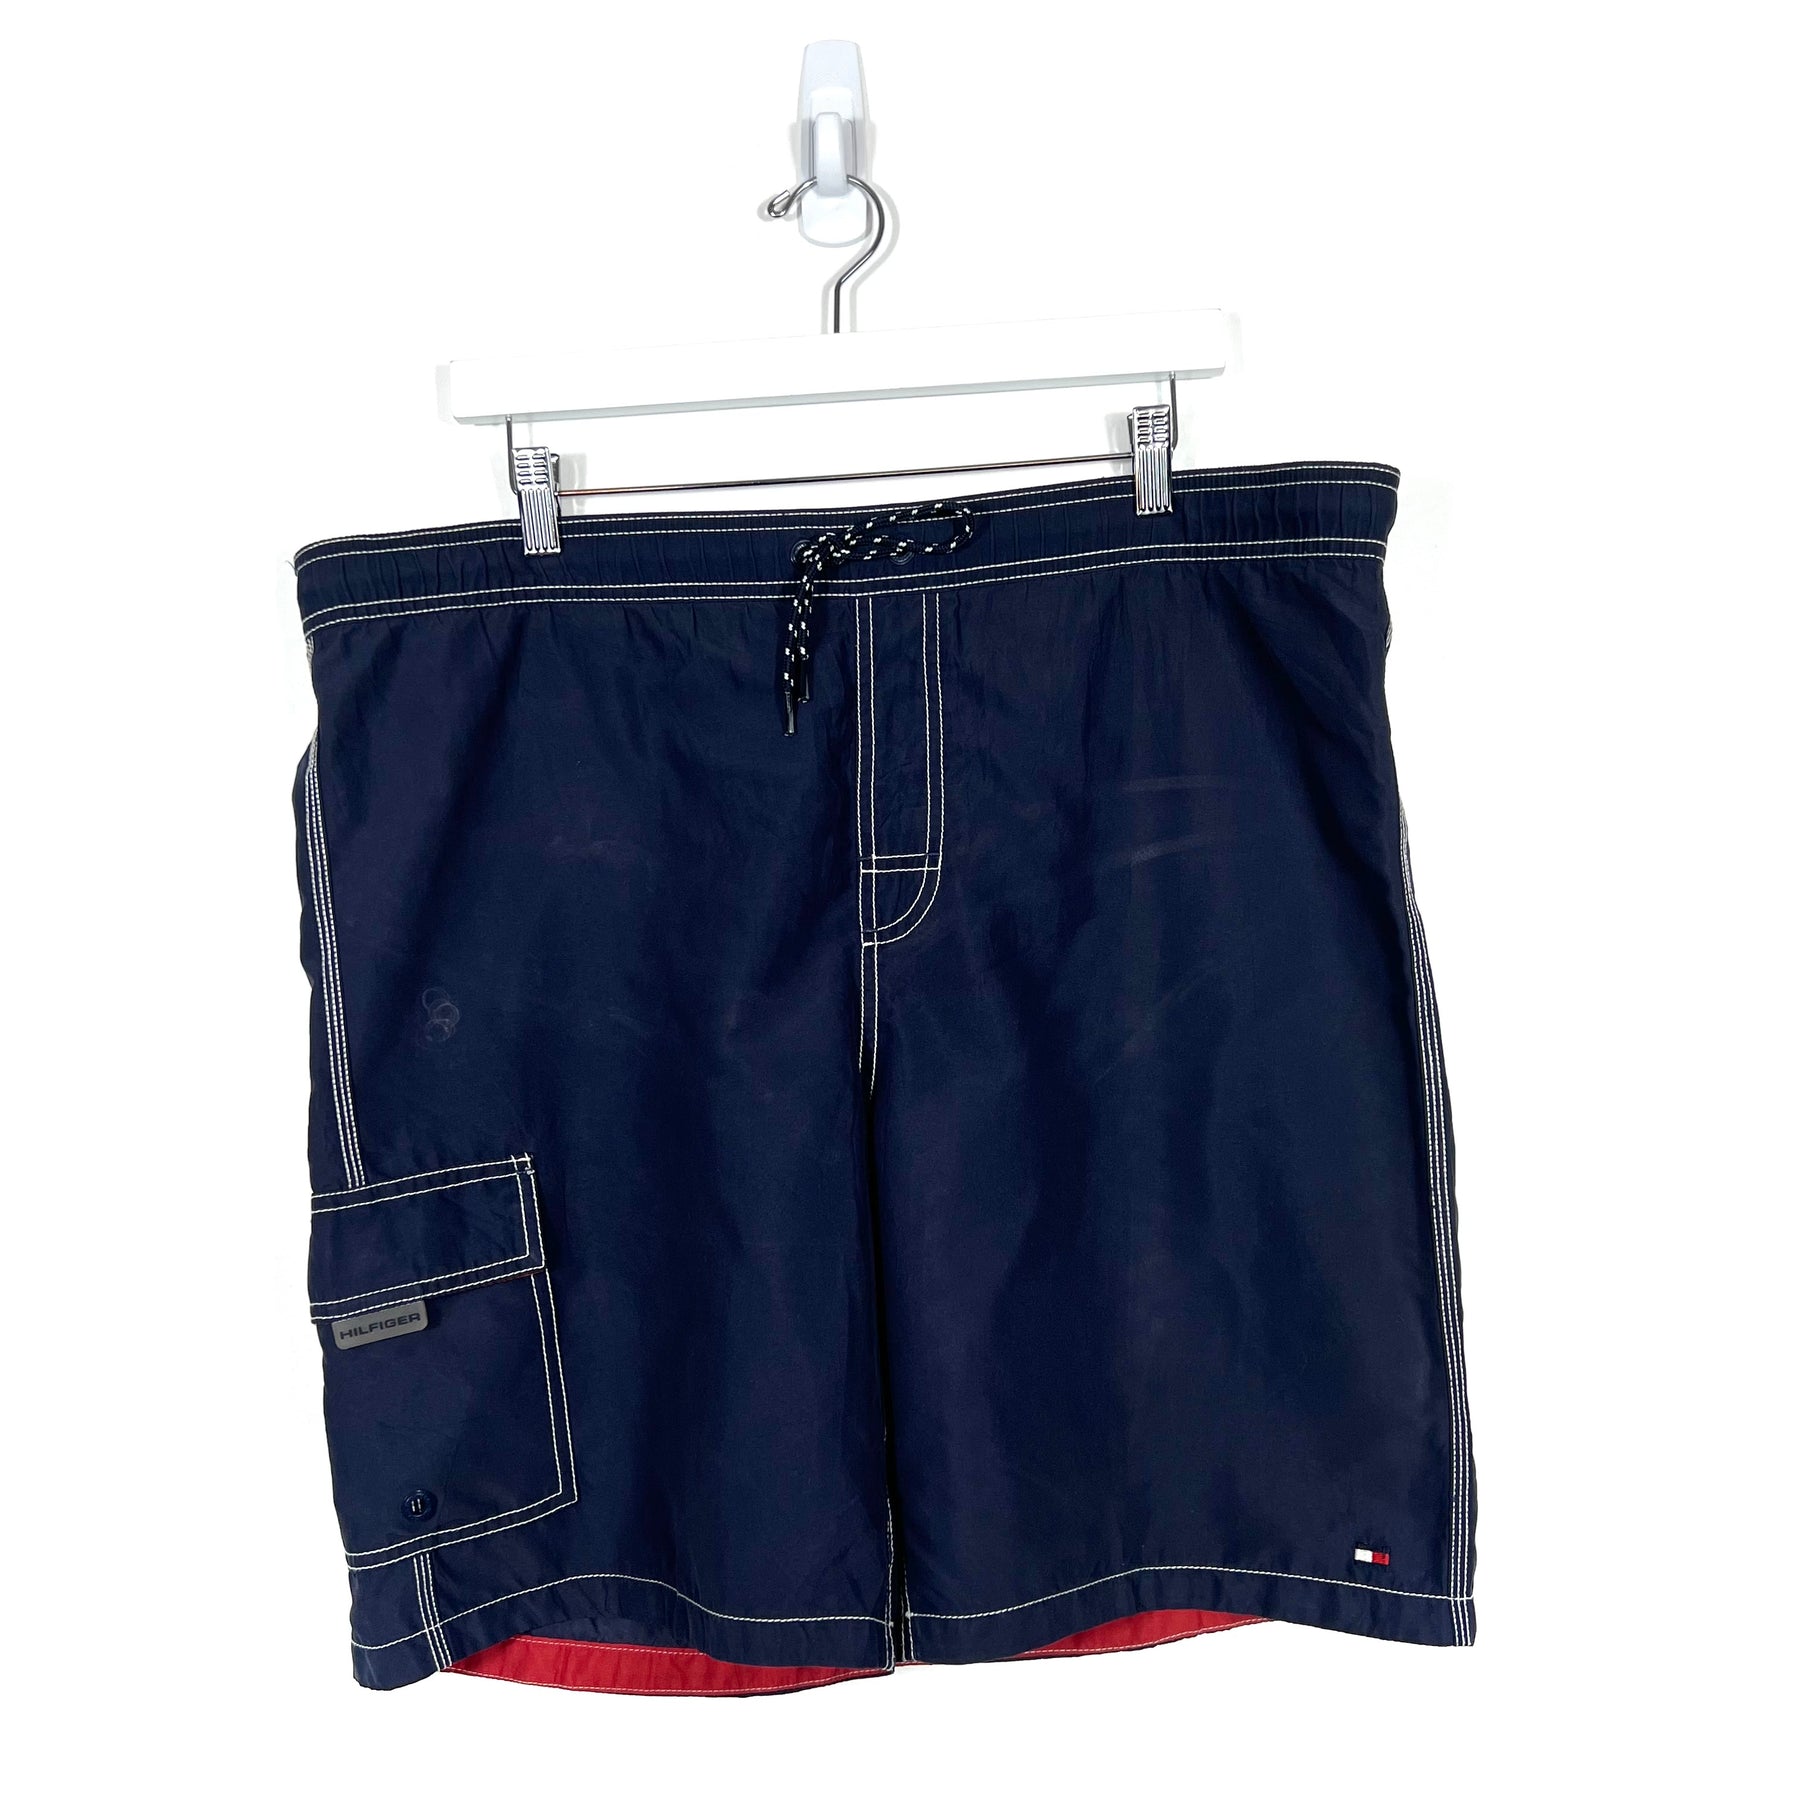 Vintage Tommy Hilfiger Board Shorts - Men's Large